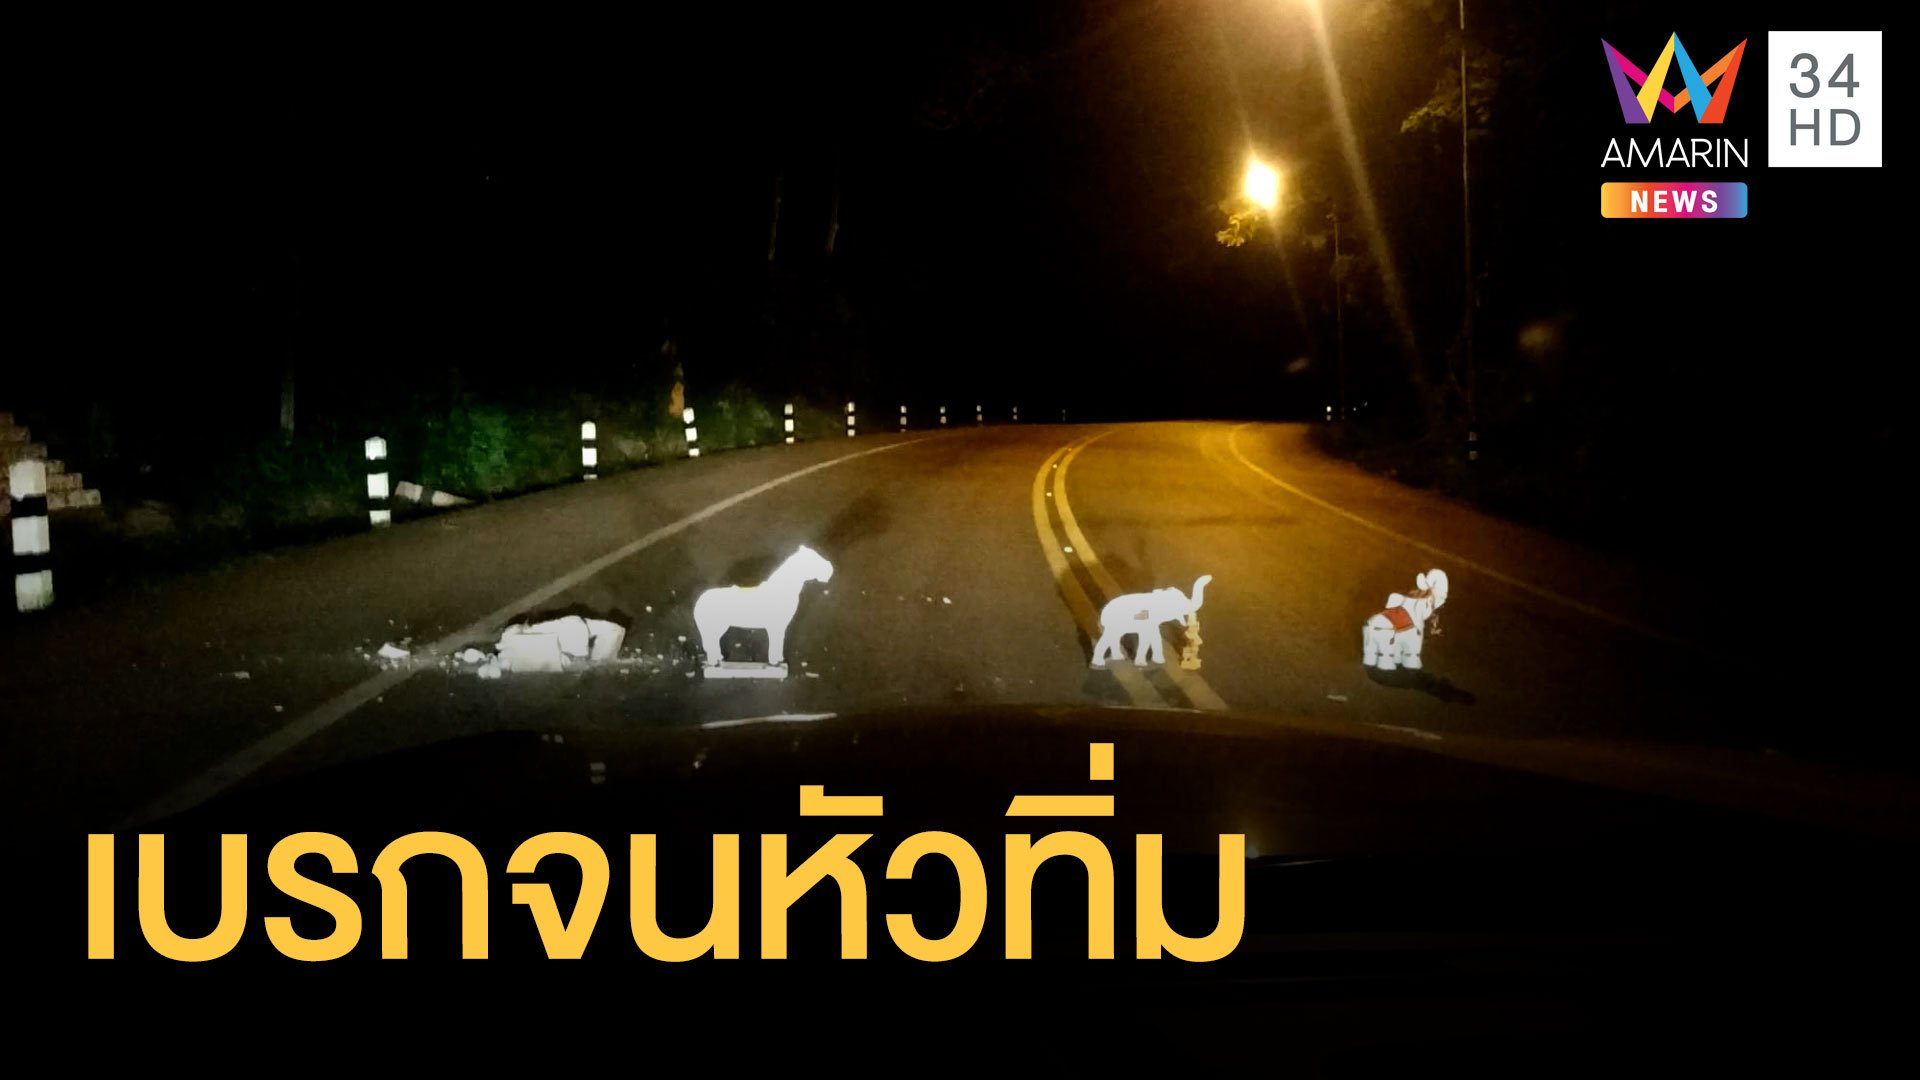 เบรกตัวโก่ง คนพิเรนทร์ยกหุ่นรูปปั้นสัตว์วางกลางถนนทางโค้ง | ข่าวอรุณอมรินทร์ | 29 พ.ค. 65 | AMARIN TVHD34